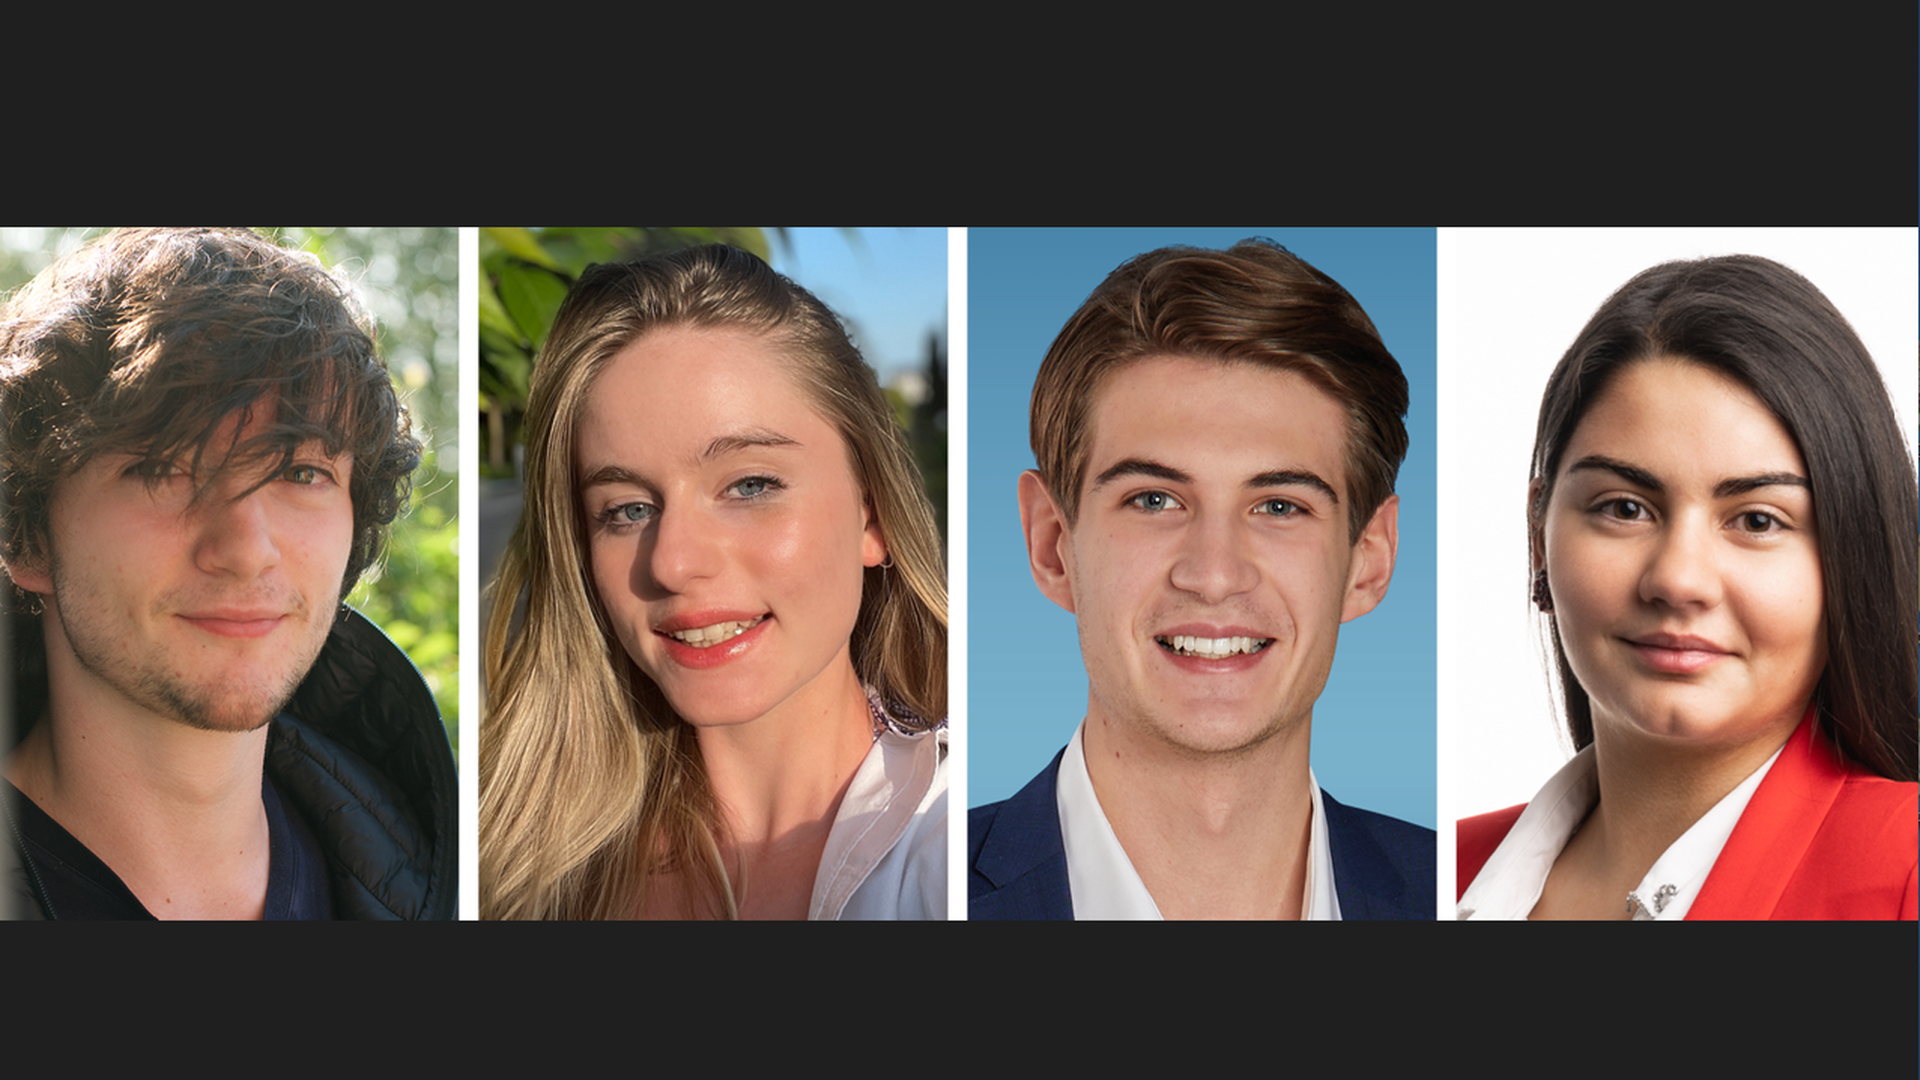 Daniel Vernacotola, Lucy Agostini, Tim Asselborn et Cristiana Carneiro (de gauche à droite) font partie des plus jeunes candidats aux élections communales.